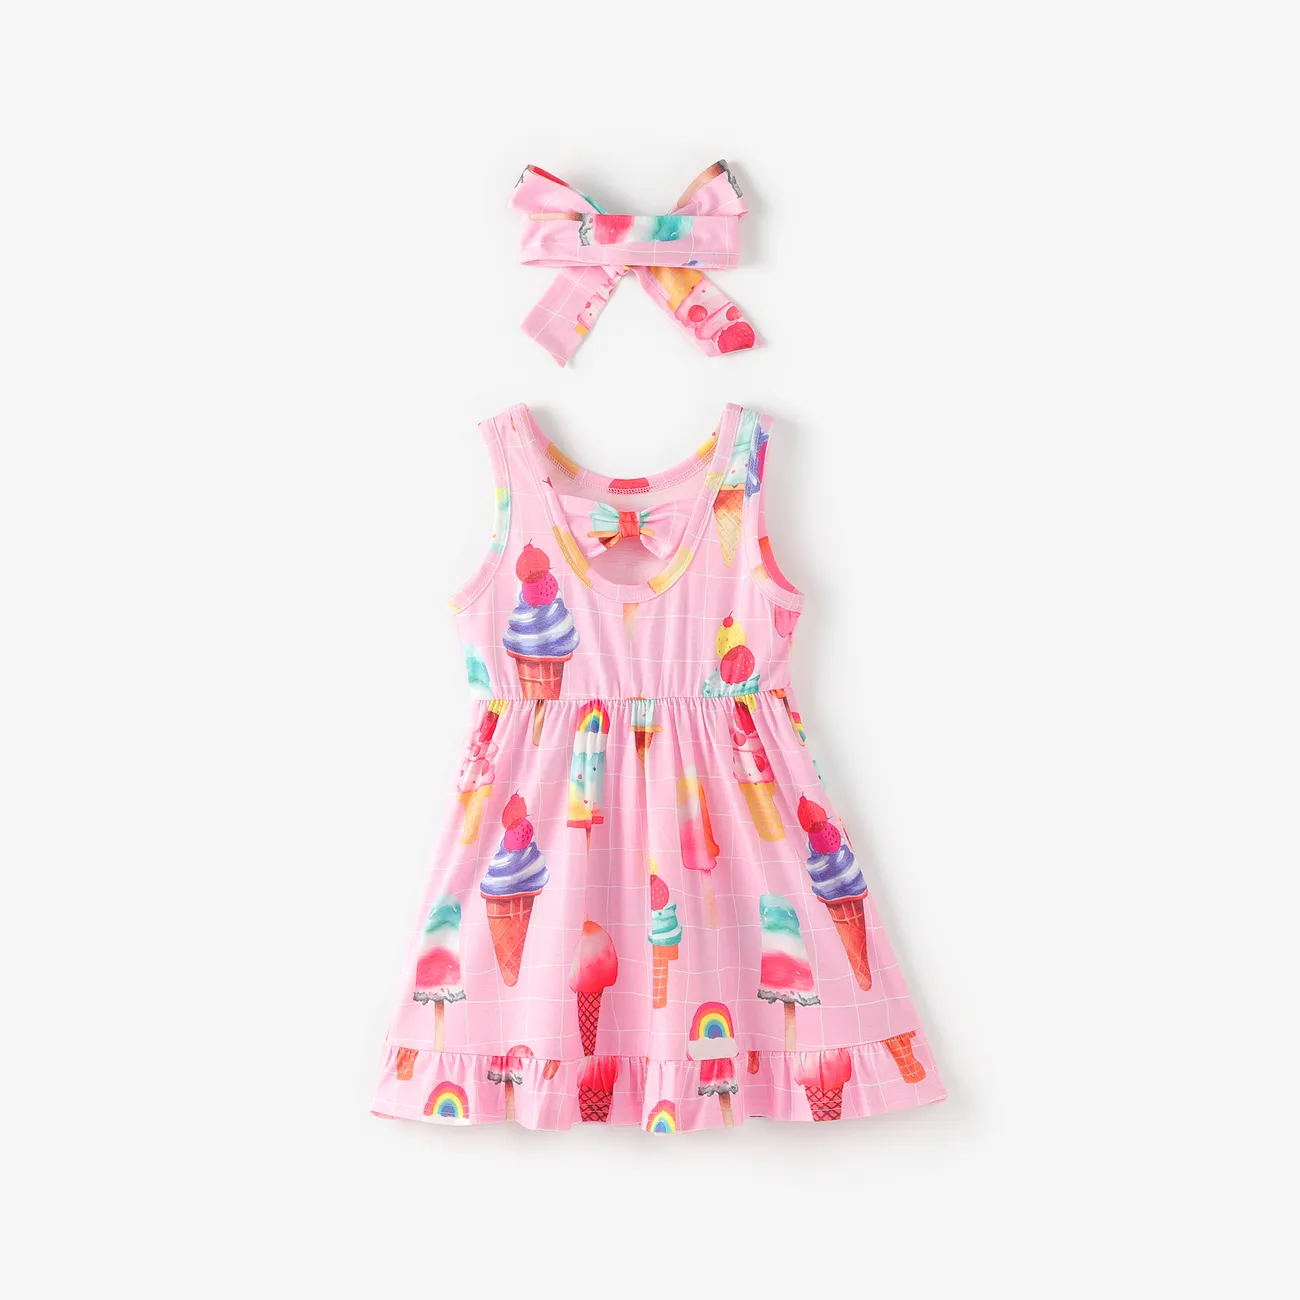 طفل صغير فتاة 2 قطع طفولي الآيس كريم طباعة اللباس مع عقال متعدد الألوان big image 1